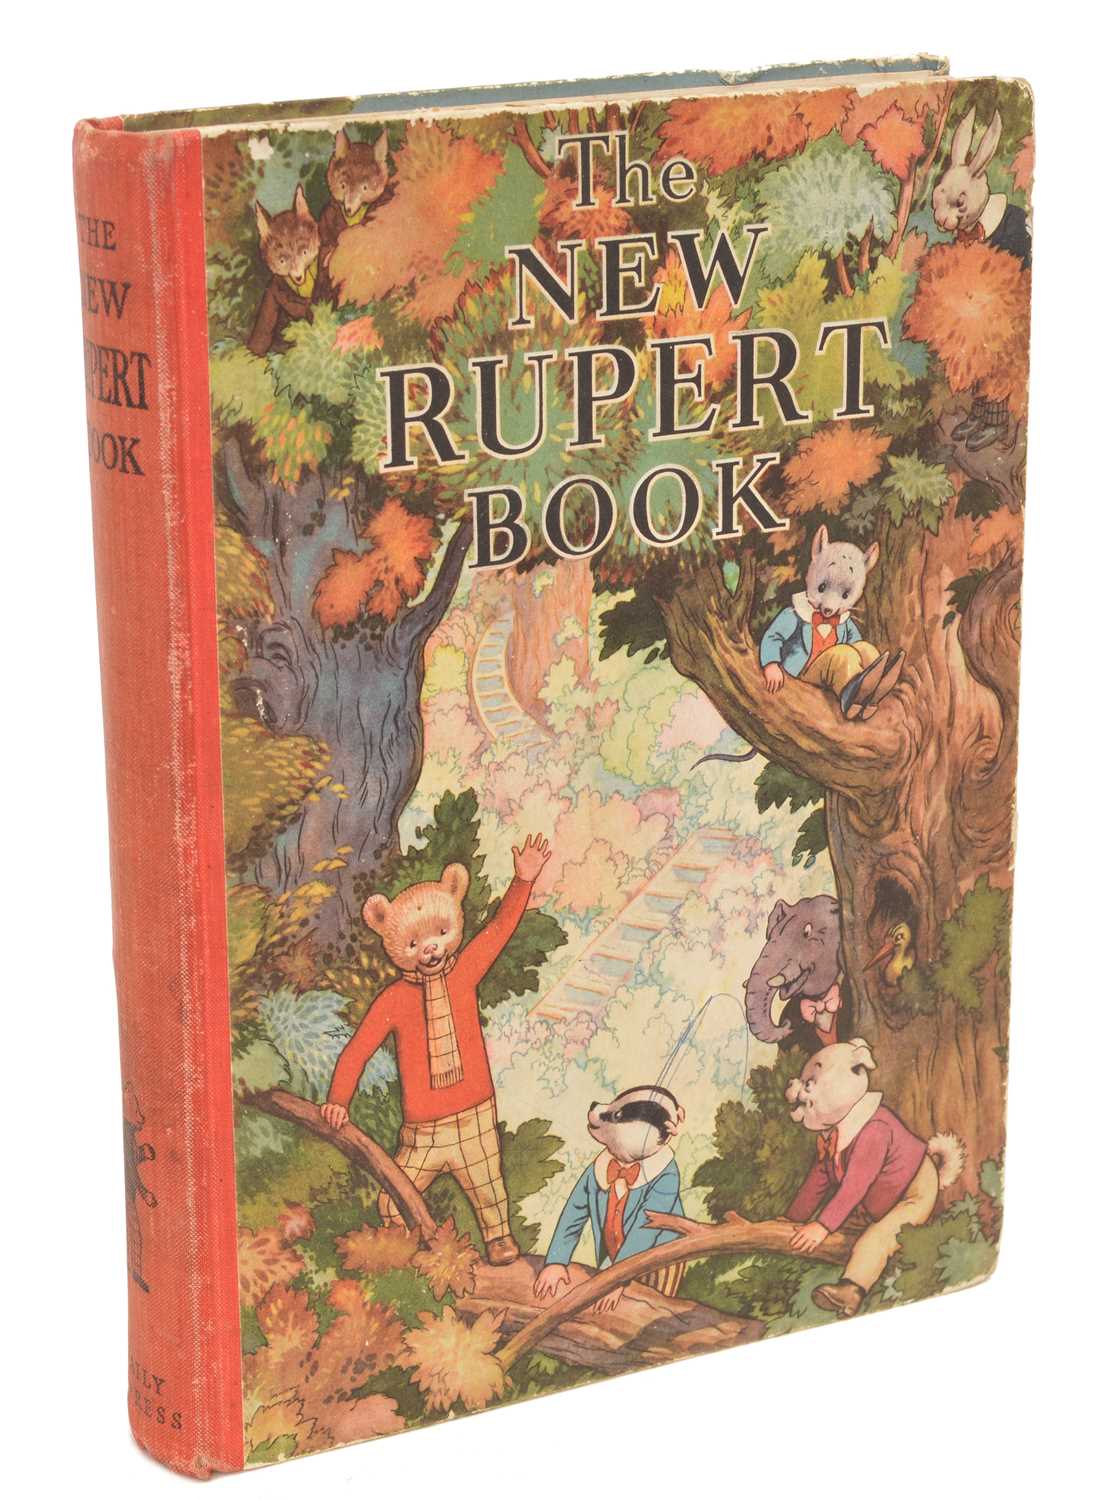 Lot 22 - Rupert Annual 1938